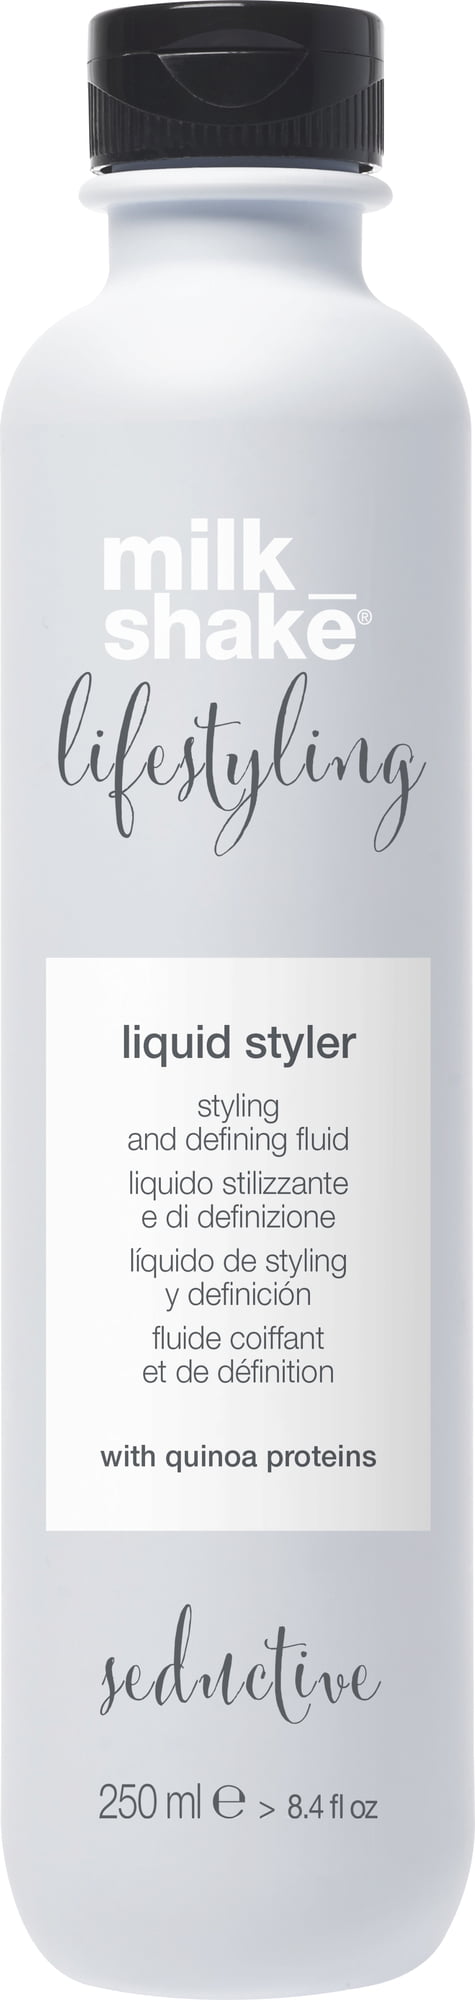 Lifestyling Liquid Styler Verführerisch 250 ml 